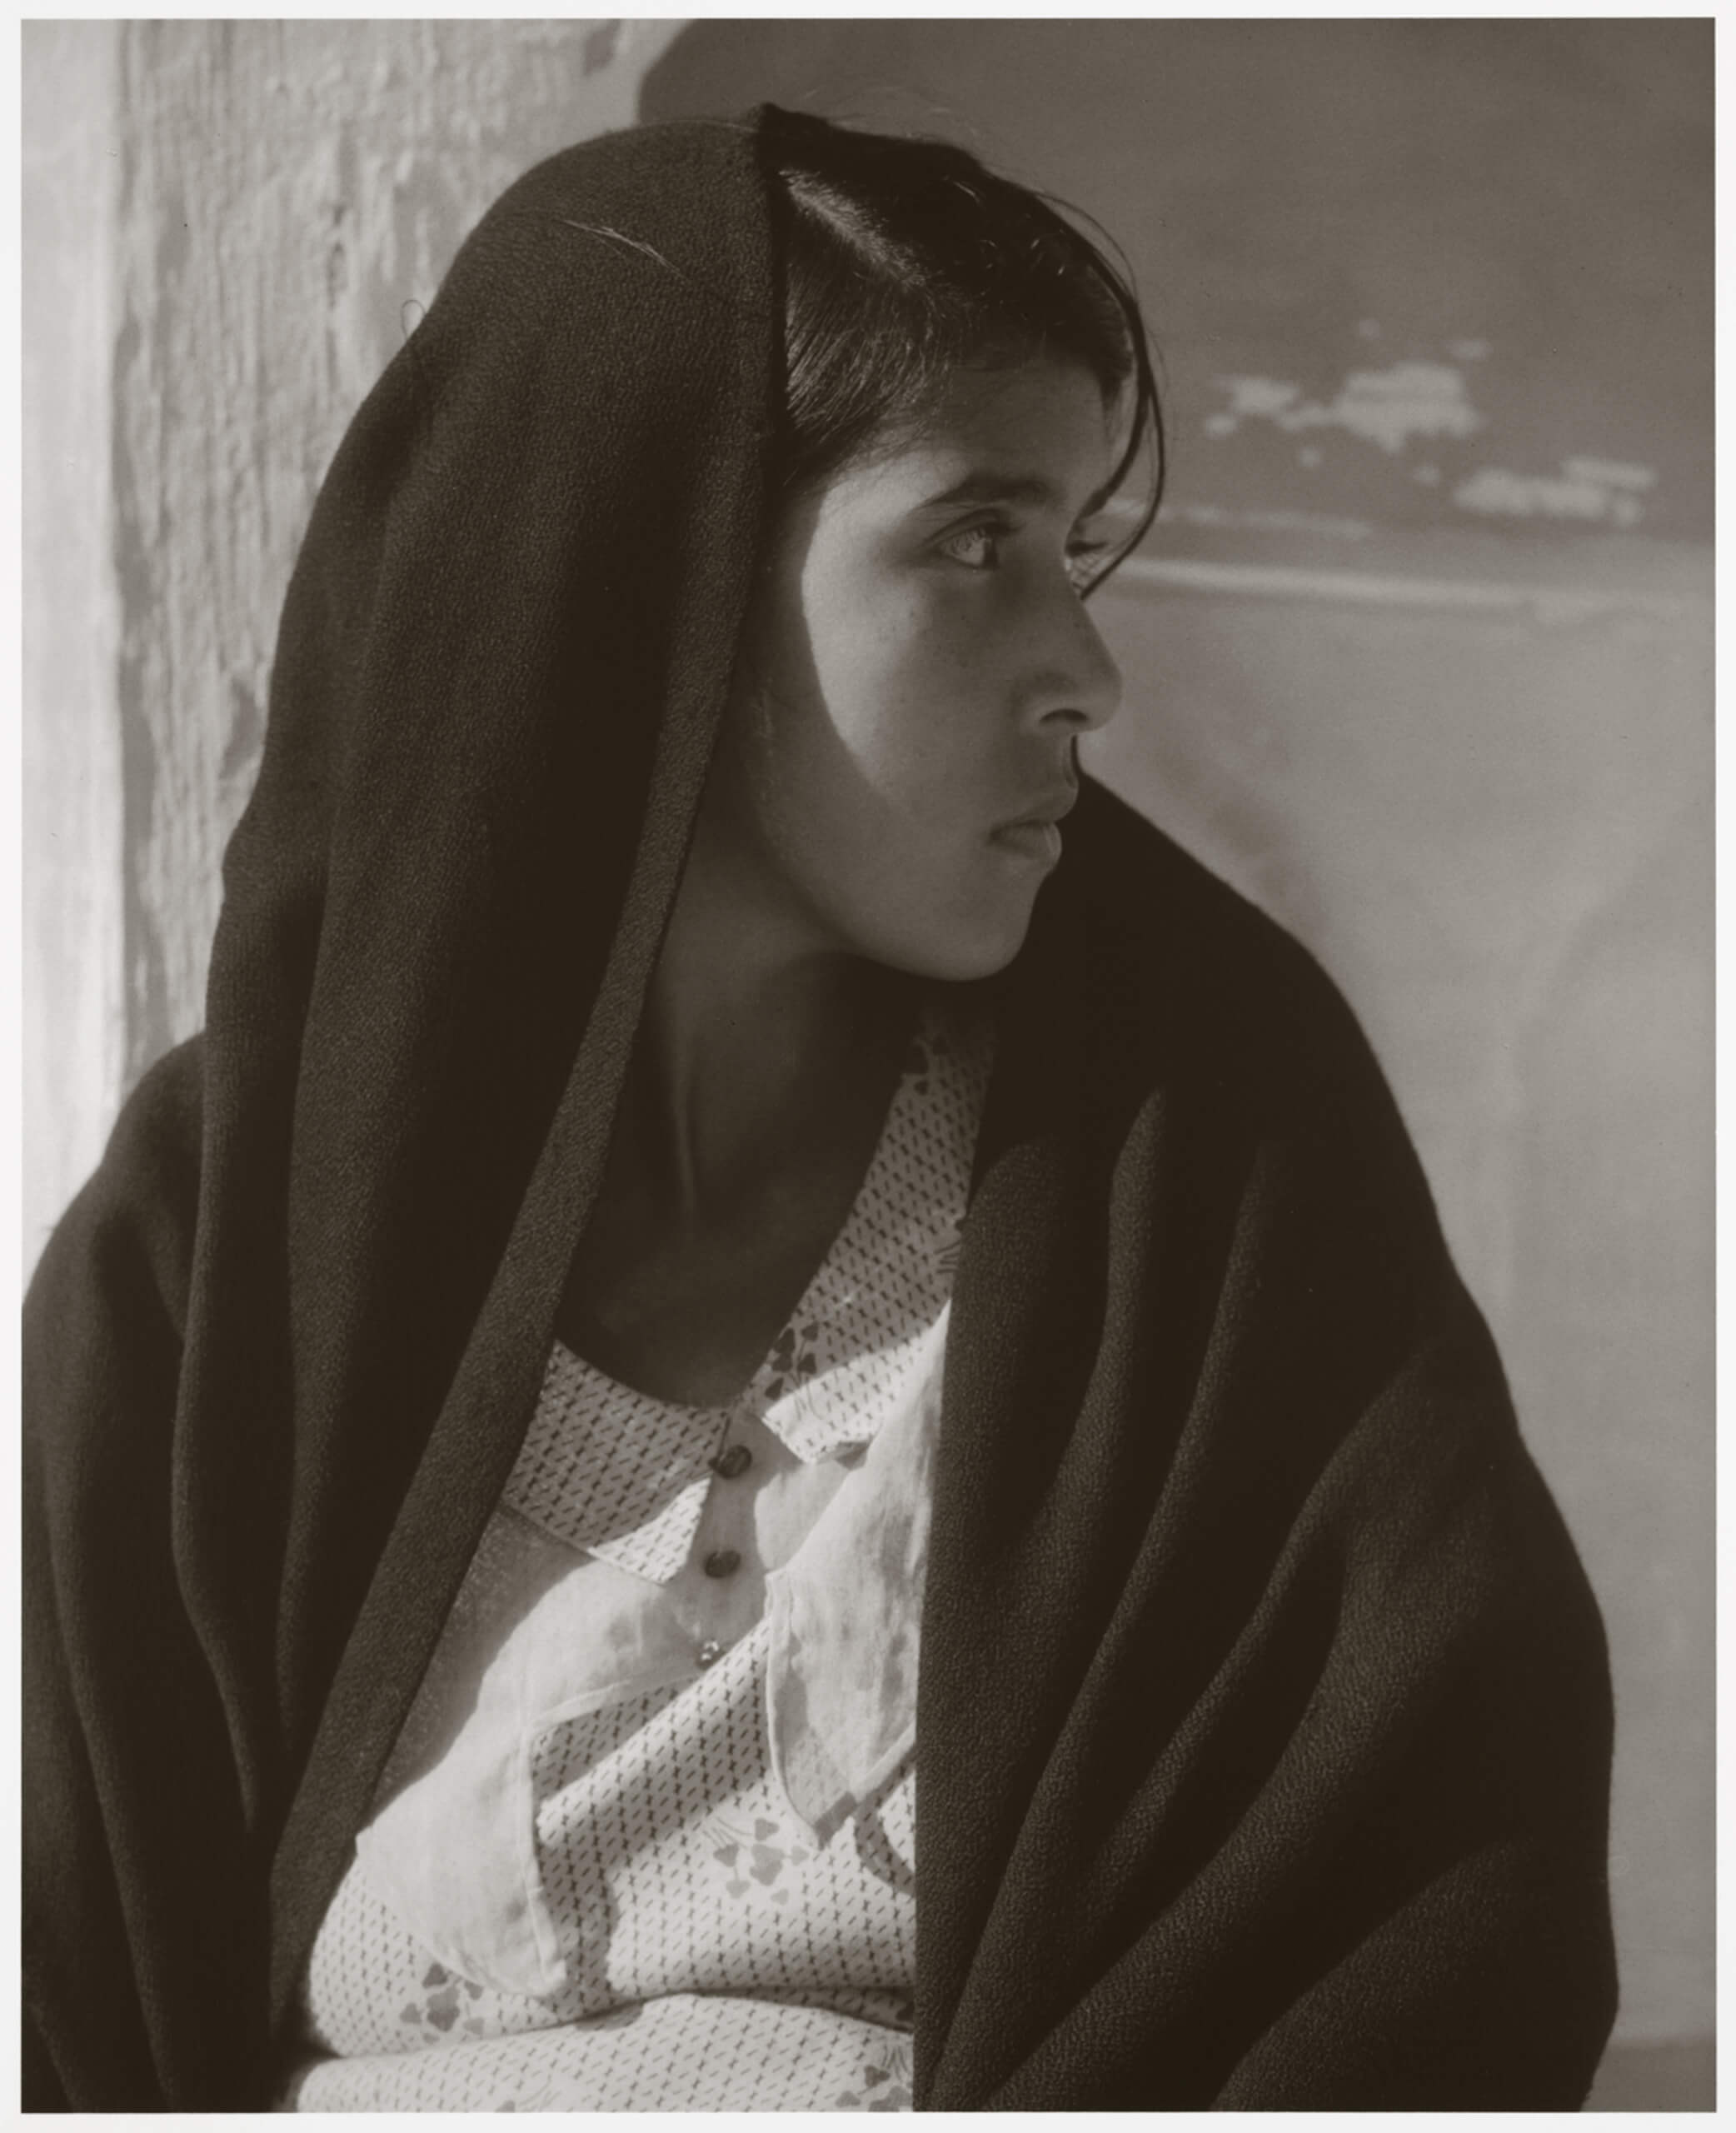 Woman of Alvarado [Susana Ortiz Cobos, habitante del pueblo de Alvarado, Veracruz, que formó parte del elenco de la película "Redes"] | El murmullo de los rostros. Paul Strand en México | Museo Amparo, Puebla